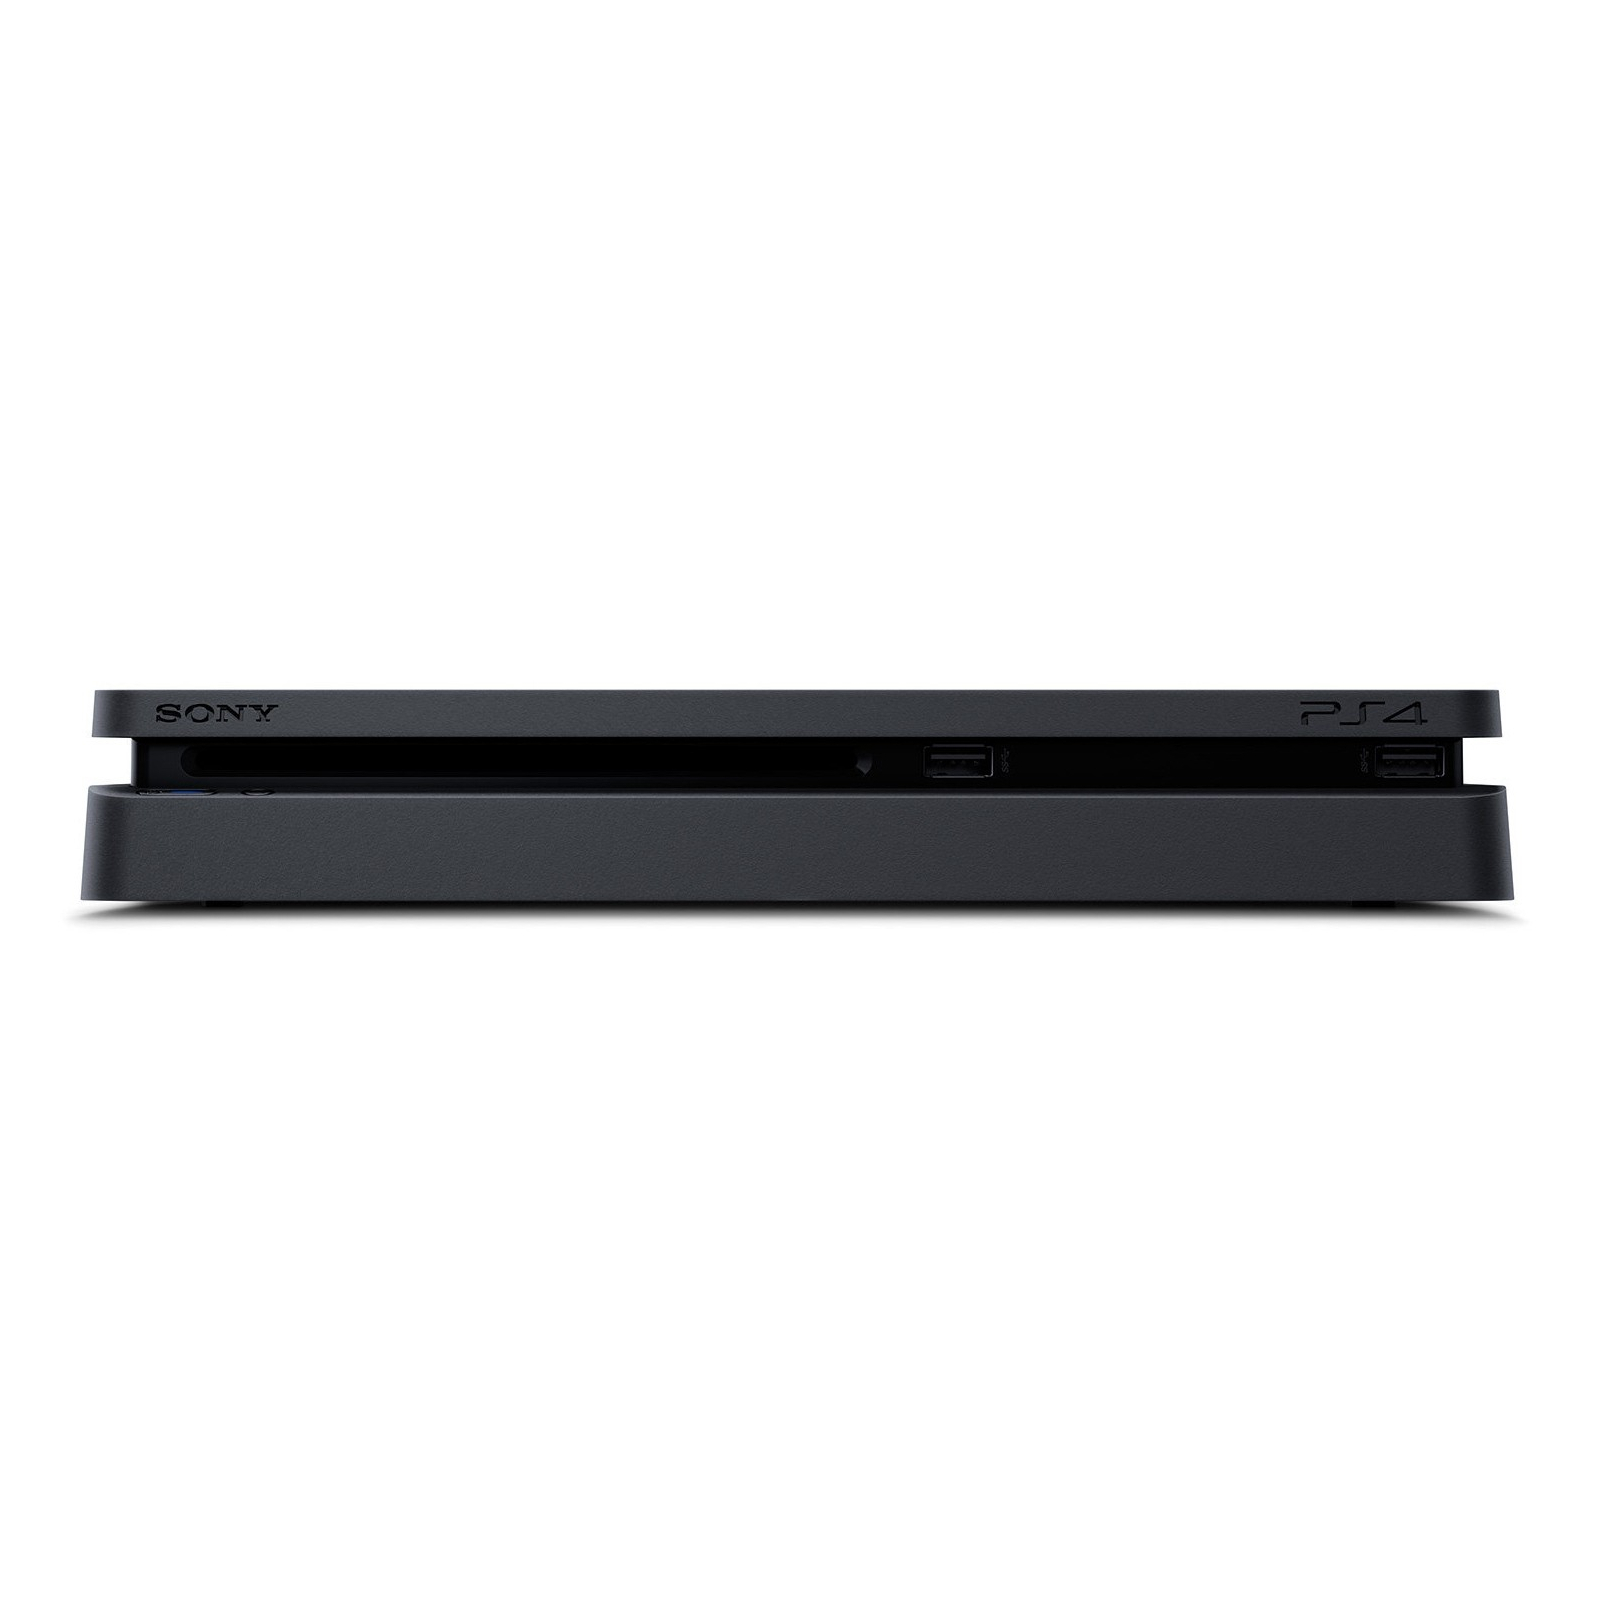 Игровая консоль Sony PlayStation 4 Slim 500Gb Black (CUH-2008) изображение 11